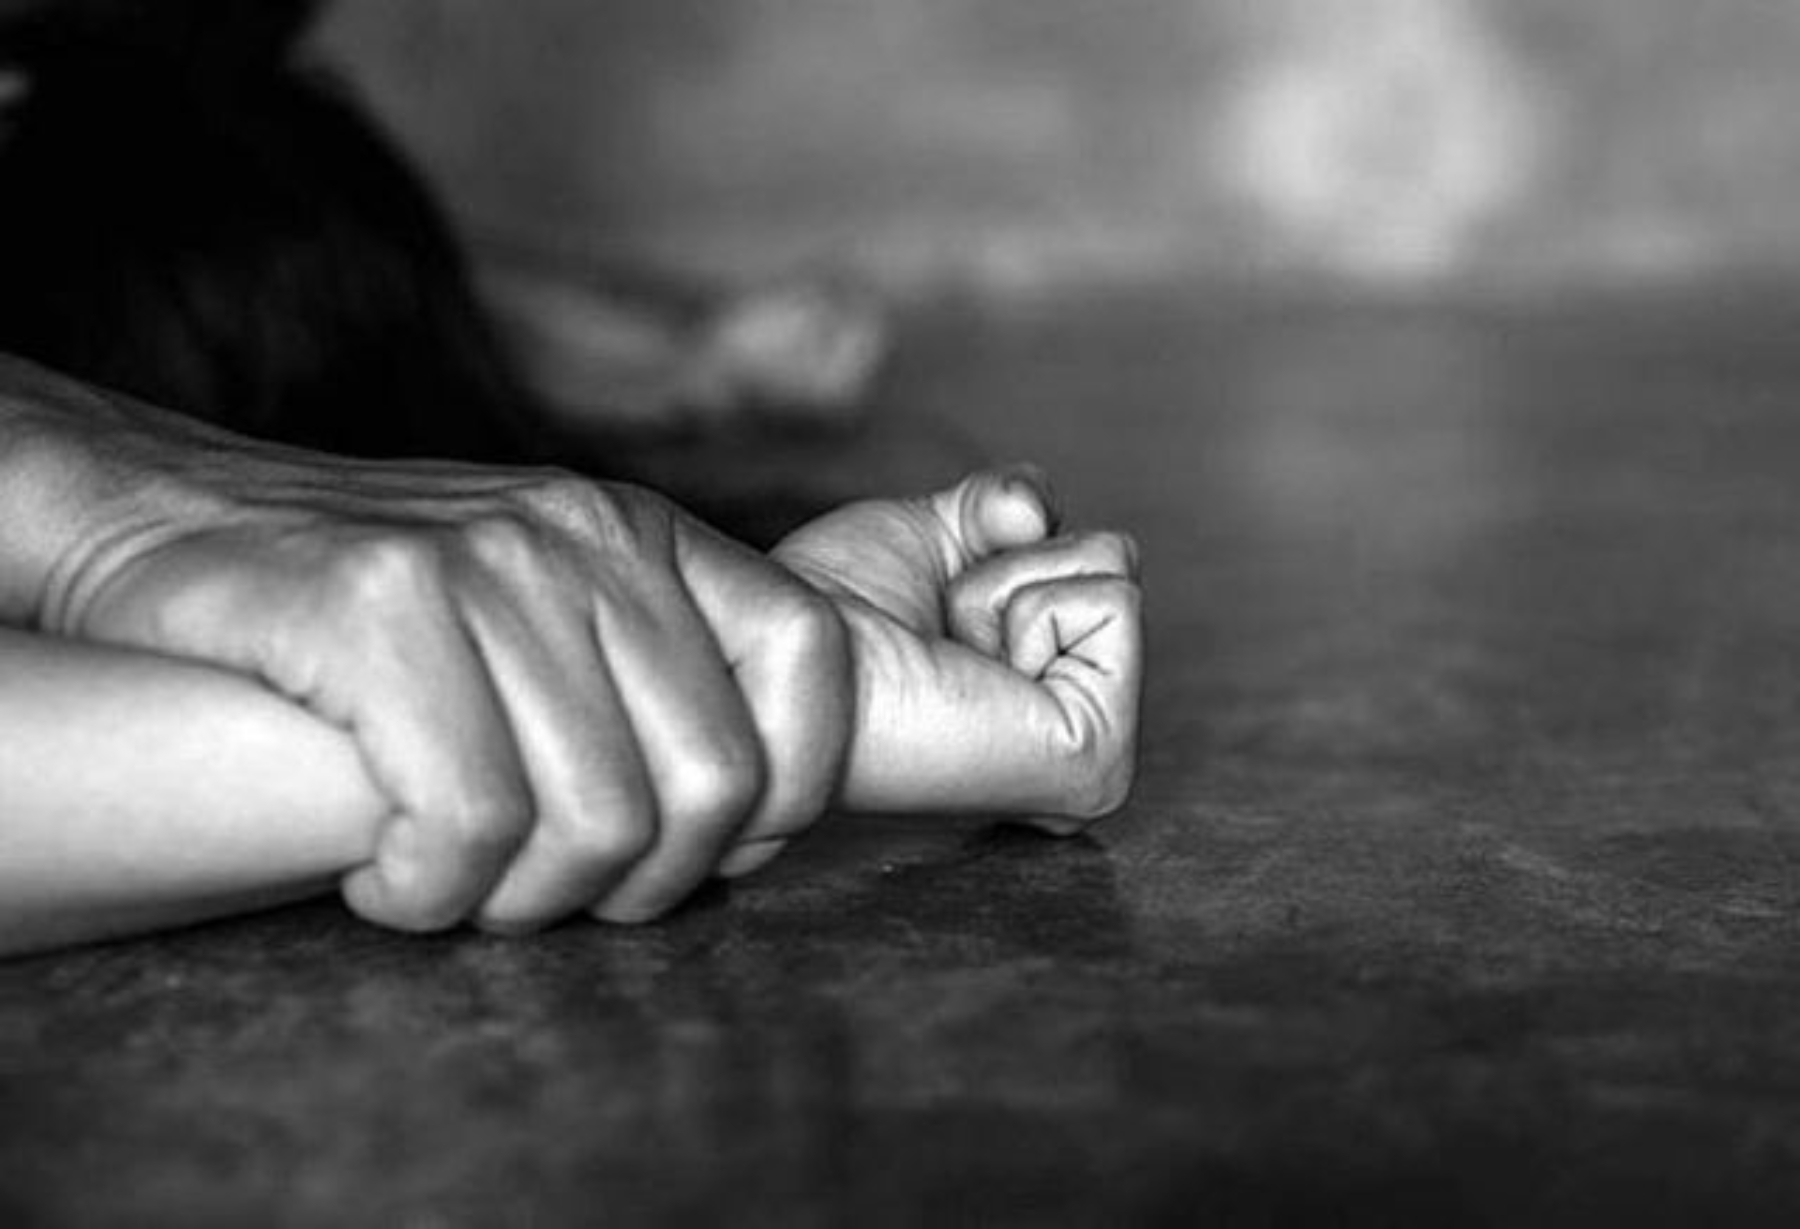 Θεσσαλονίκη: 50χρονος βίαζε για 6 χρόνια την ανήλικη ανιψιά του | Ειδησεις | Pagenews.gr